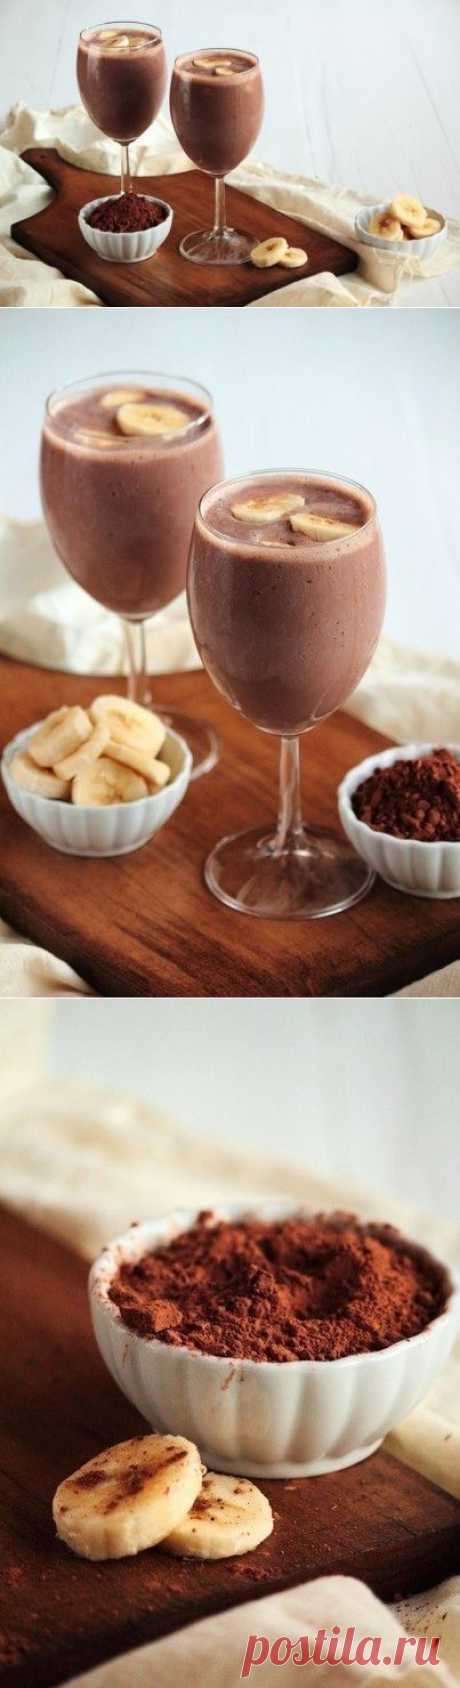 Как приготовить бананово-шоколадный коктейль - рецепт, ингридиенты и фотографии